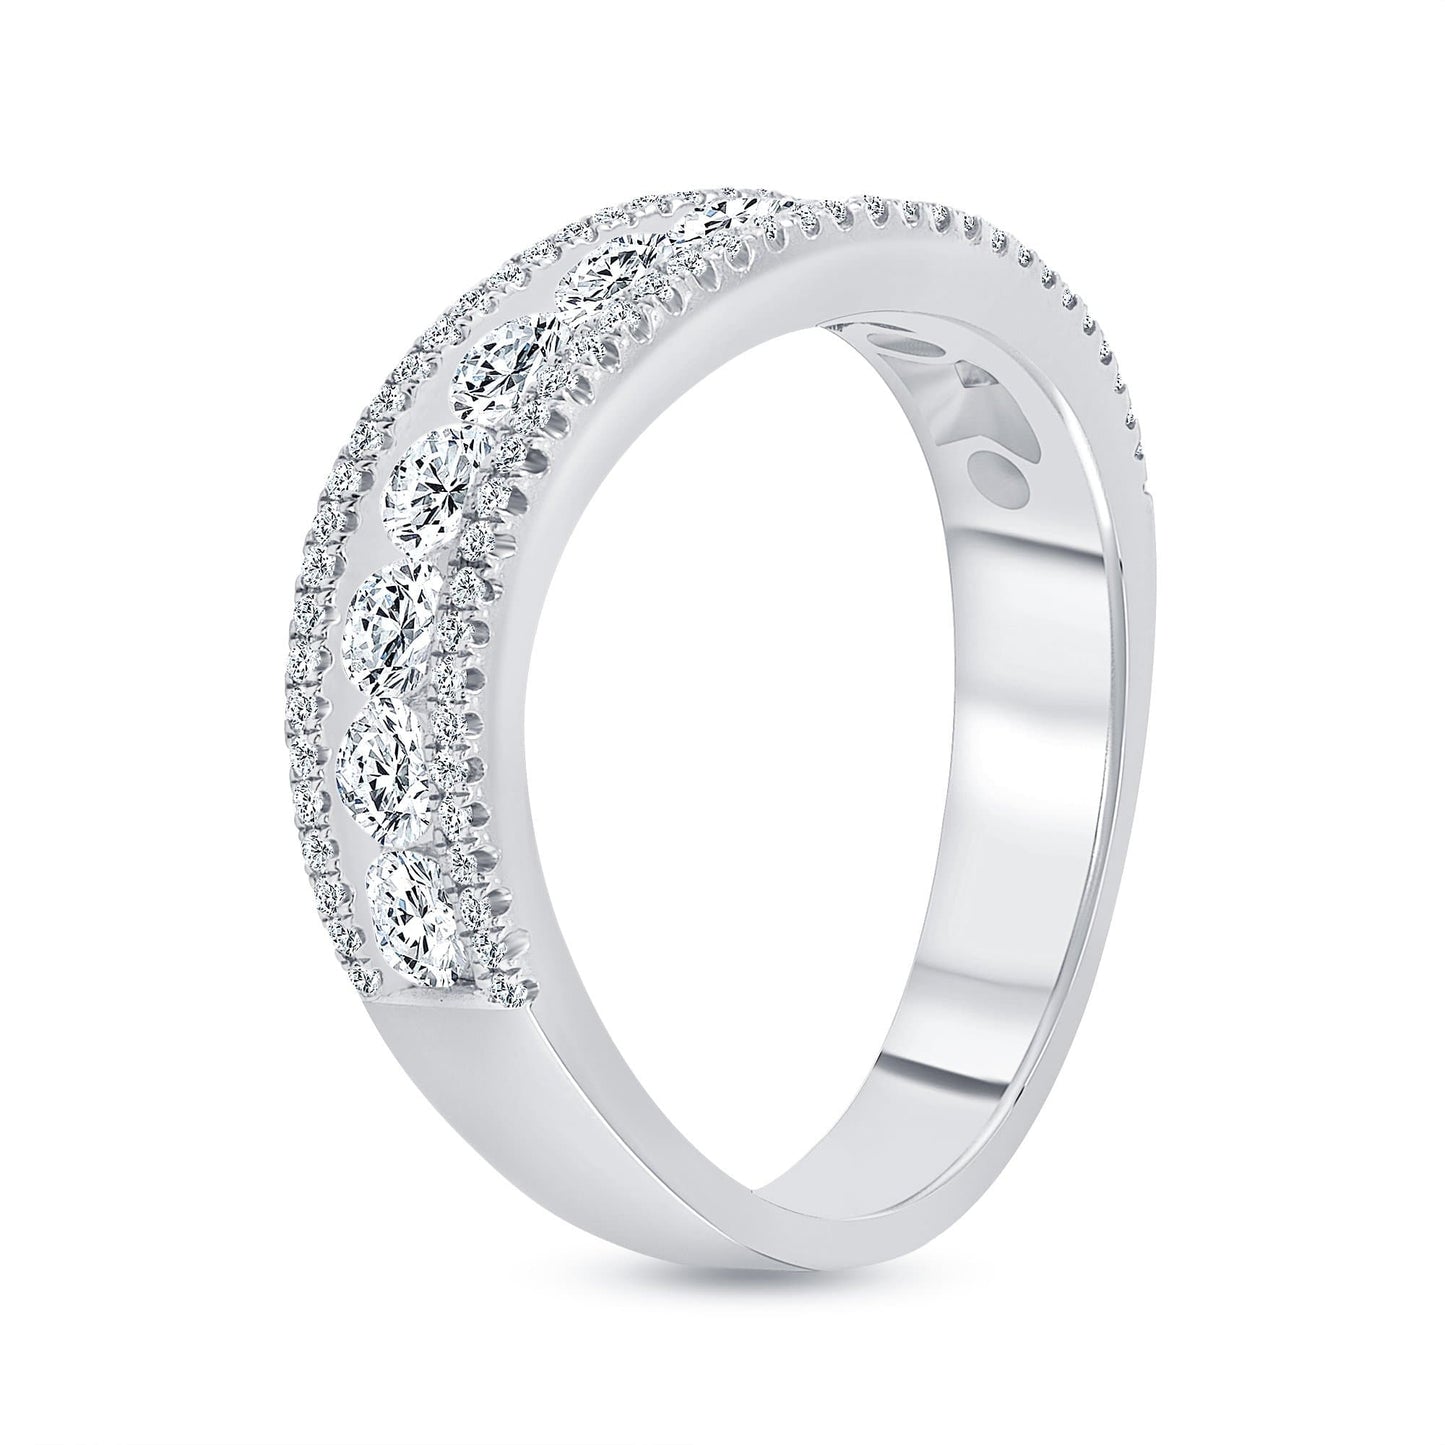 The Sabrina Ring - Happy Jewelers Fine Jewelry Lifetime Warranty